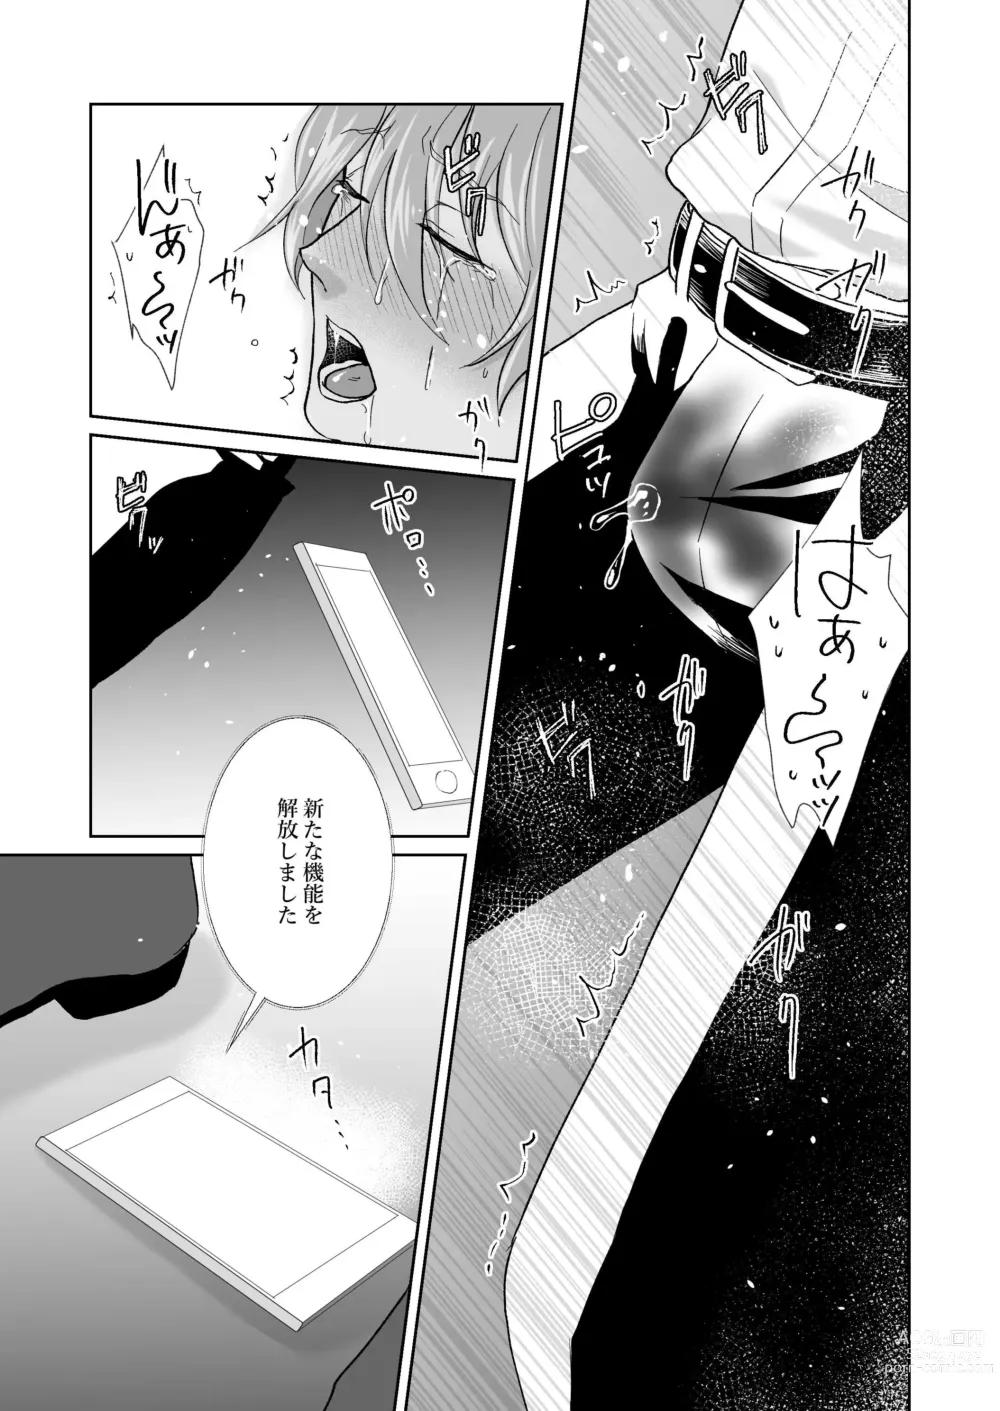 Page 56 of doujinshi Chikubi Ikusei Game